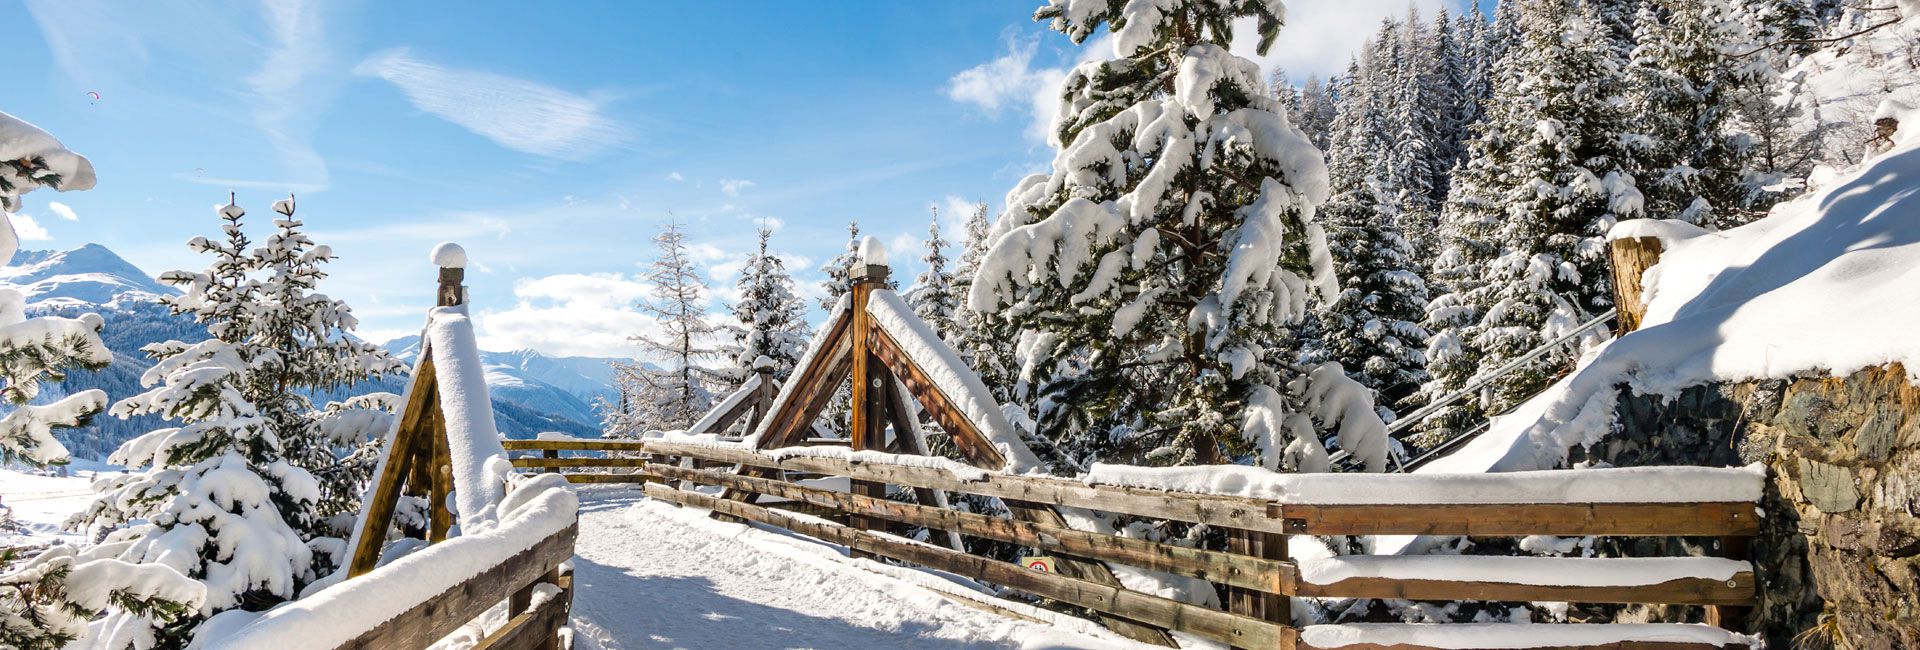 Winterlaub in Chalets in den Alpen